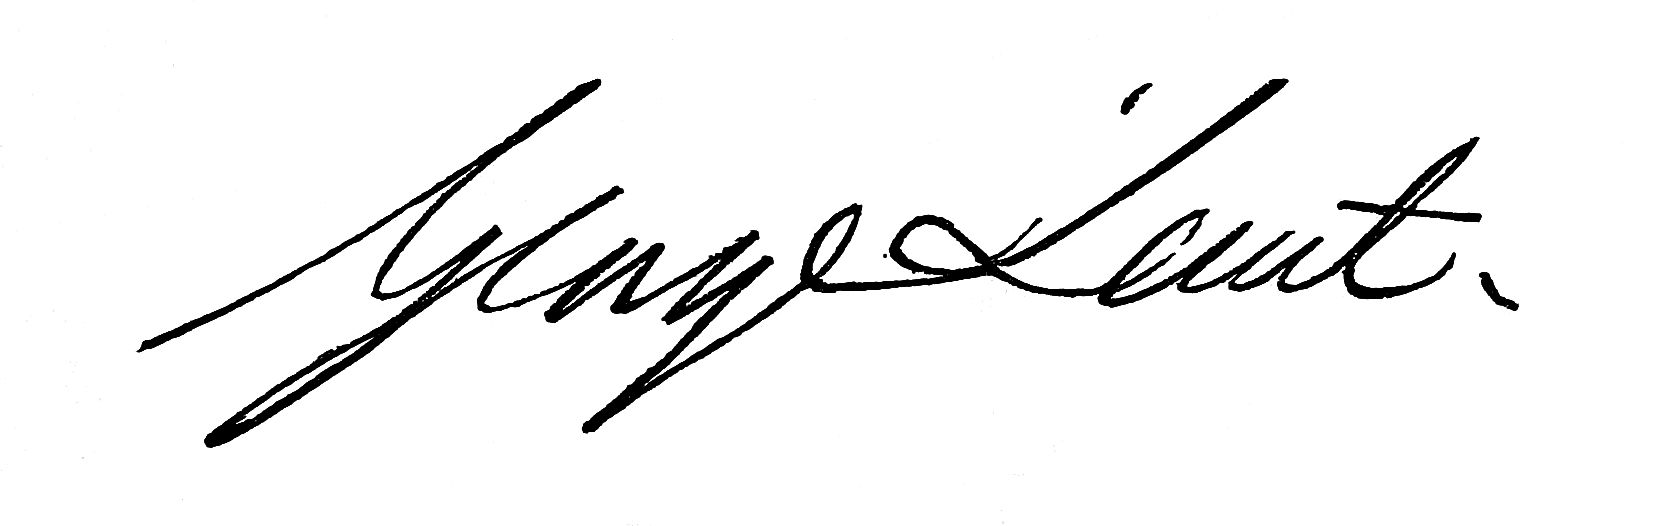 Signature of George Lunt